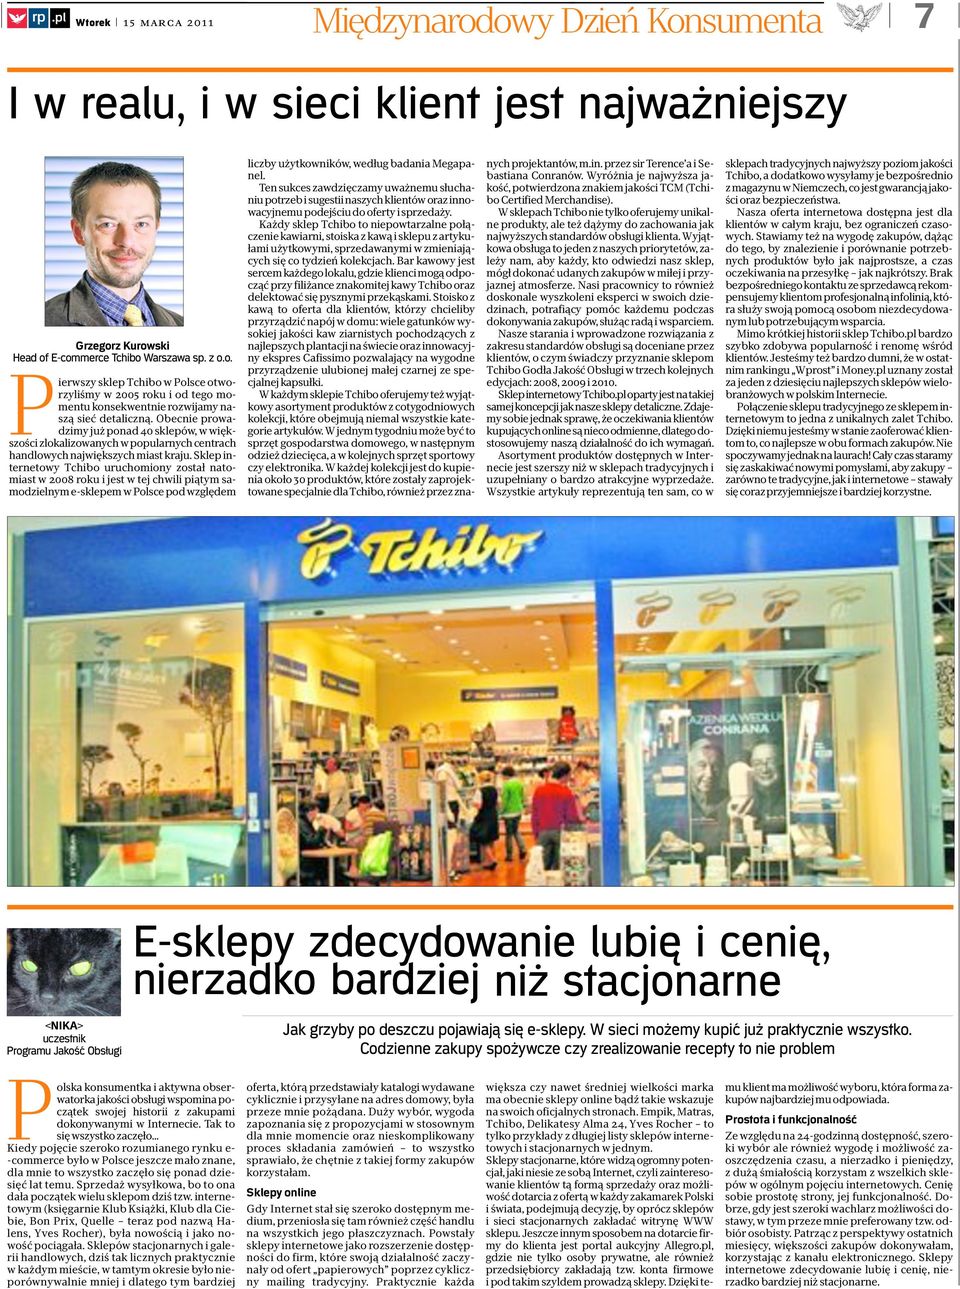 Sklep internetowy Tchibo uruchomiony został natomiast w 2008 roku i jest w tej chwili piątym samodzielnym e-sklepem w Polsce pod względem liczby użytkowników, według badania Megapanel.